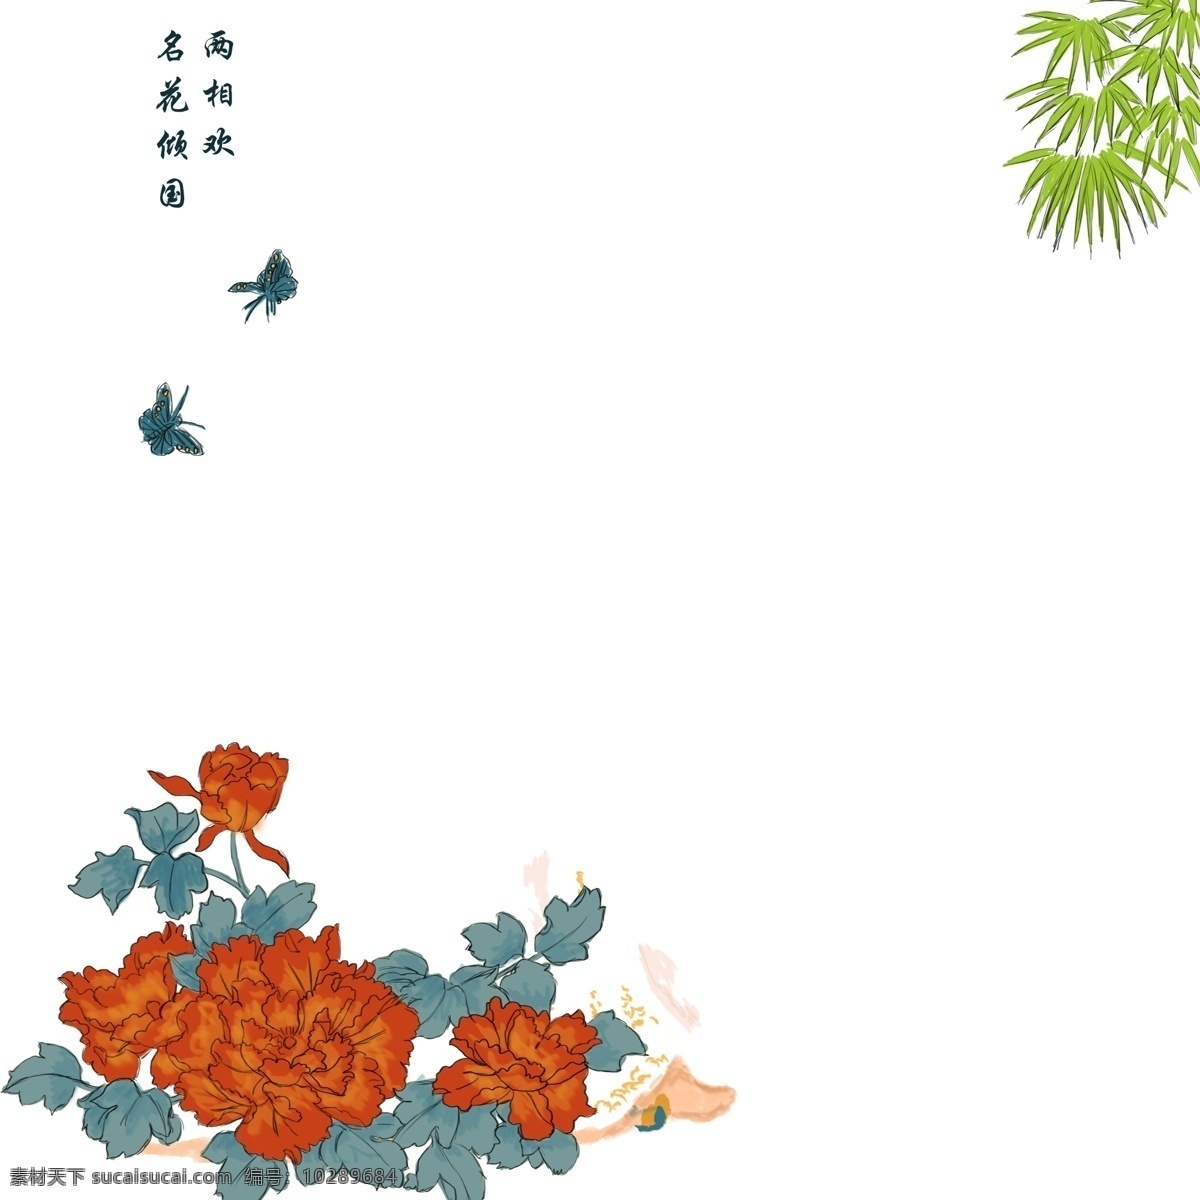 中国 风 花朵 装饰 边框 中国风 古风 盛开的花朵 飞舞的蝴蝶 柳叶 复古边框 复古海报装饰 产品复古包装